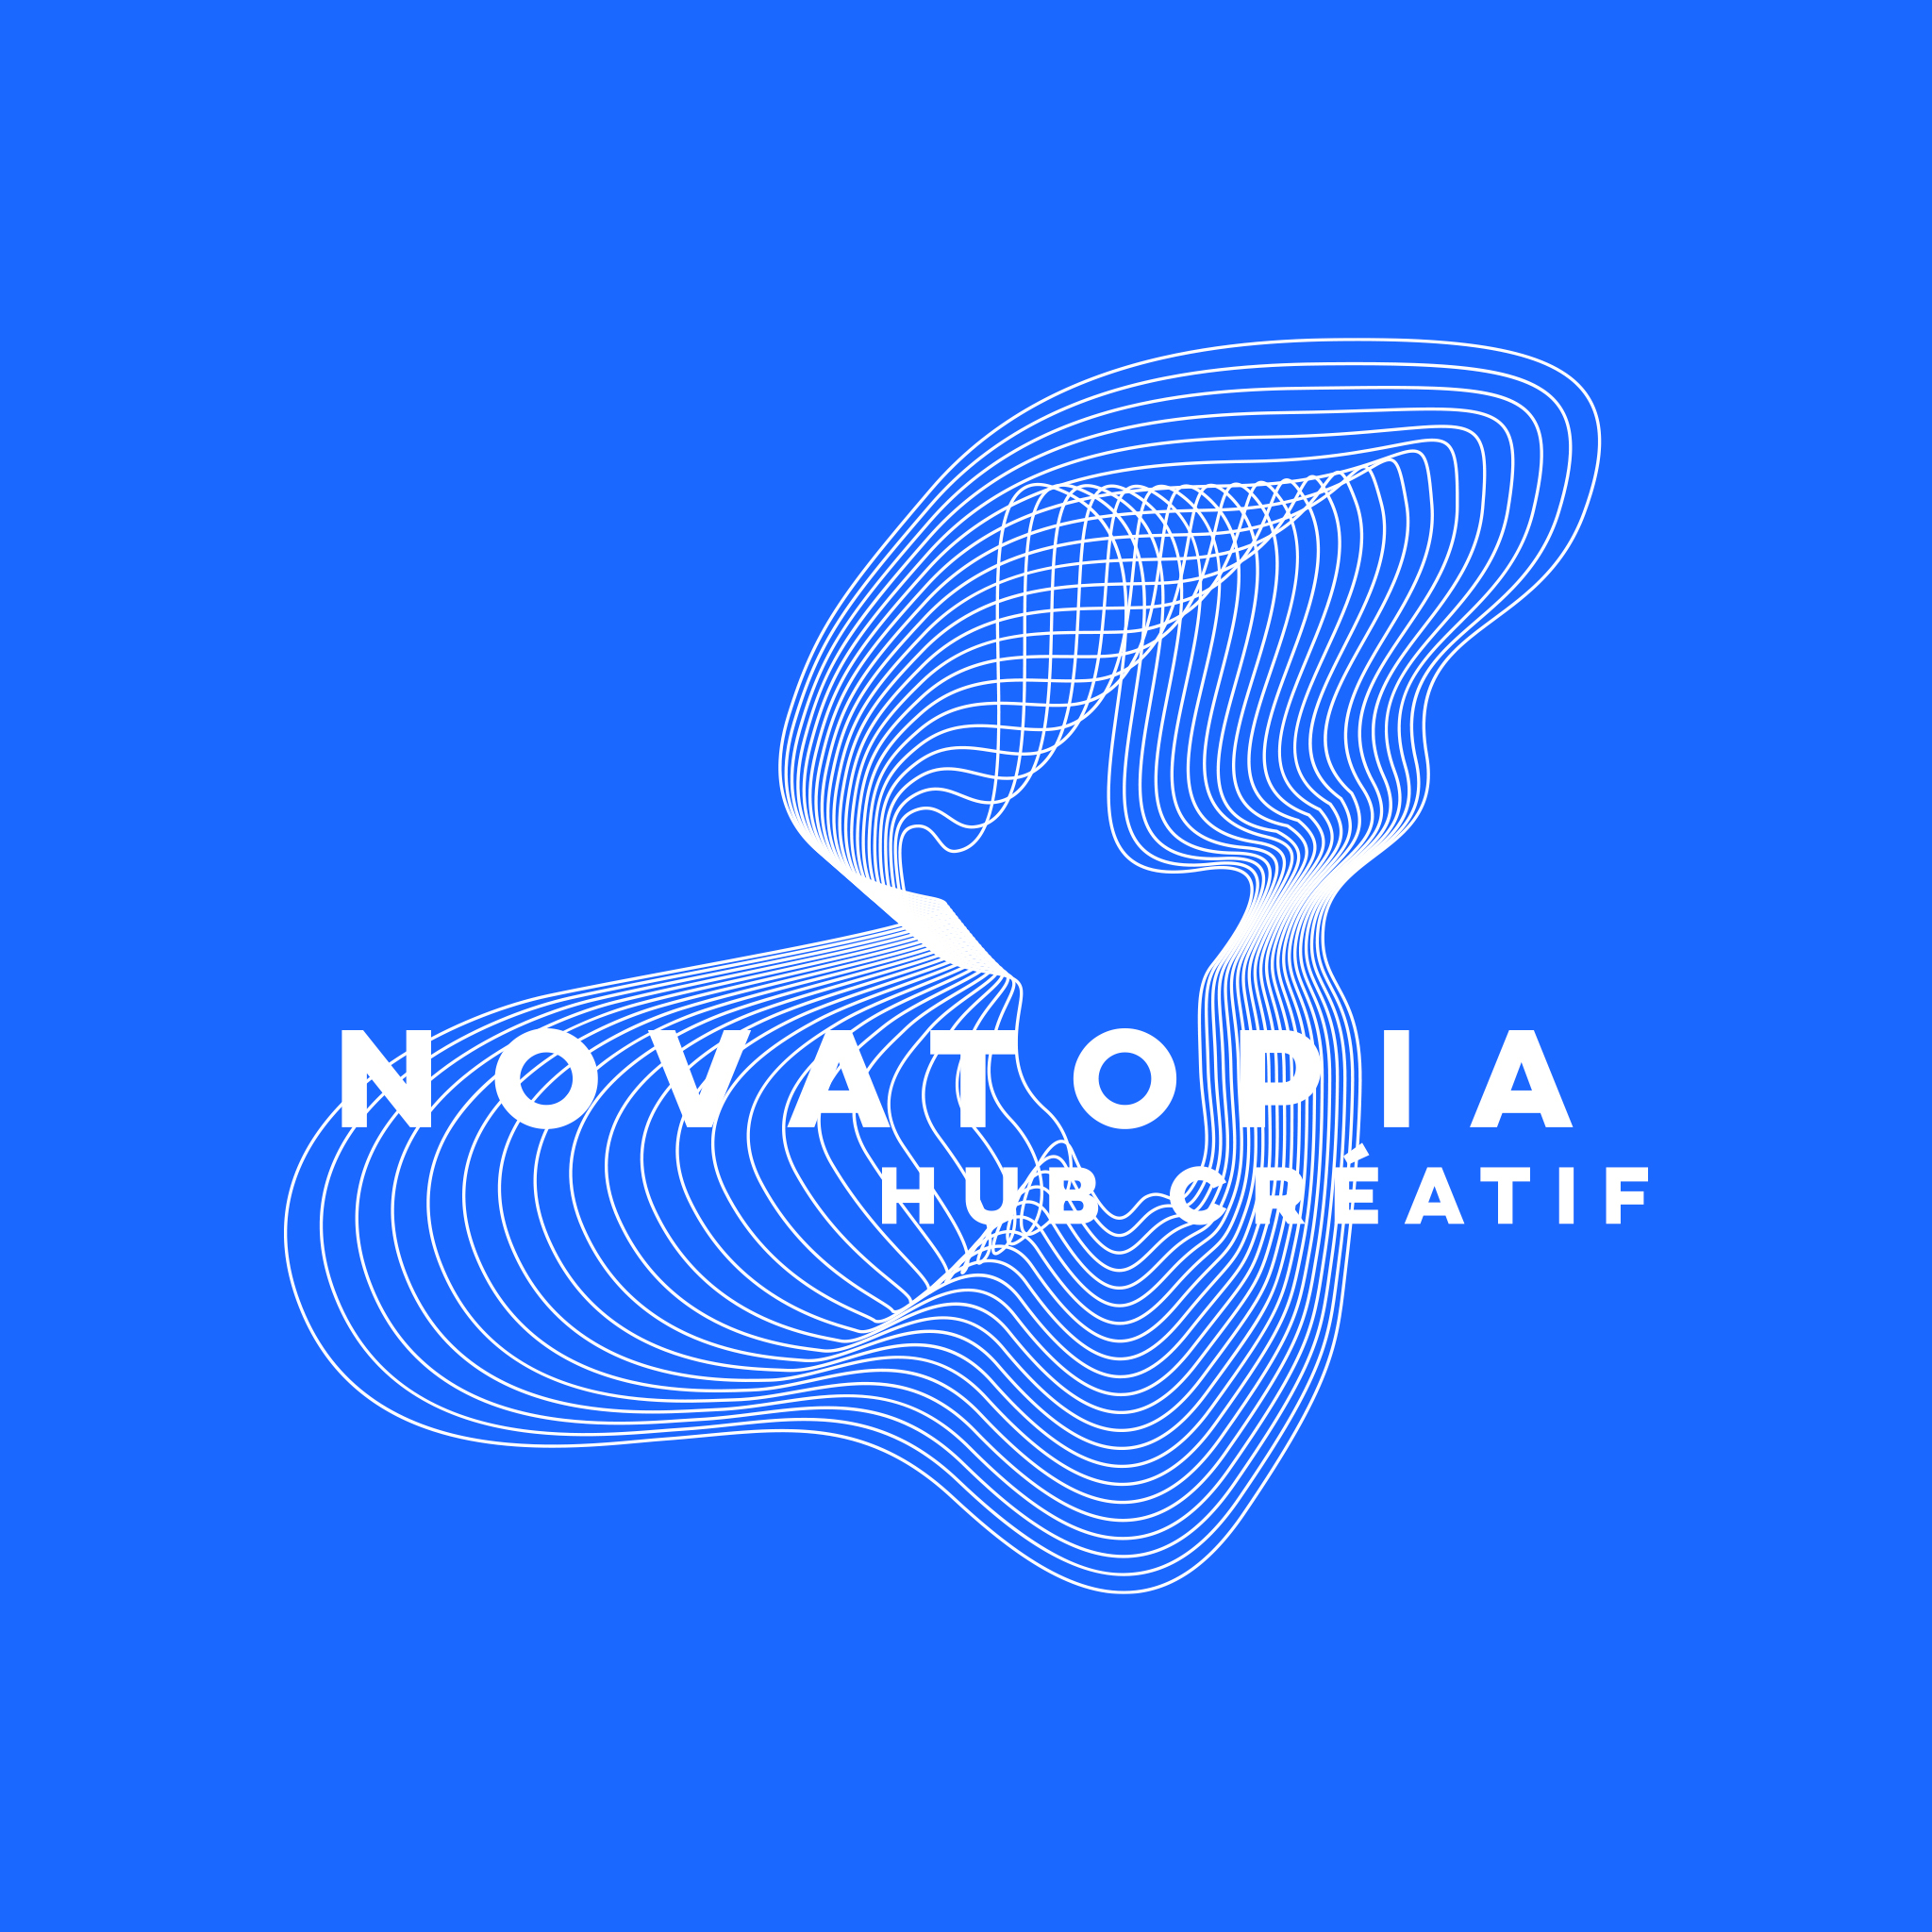 autograff-design-graphique-graphiste-toulouse-france-logo-blanc-identite-novatopia-hub-creatif